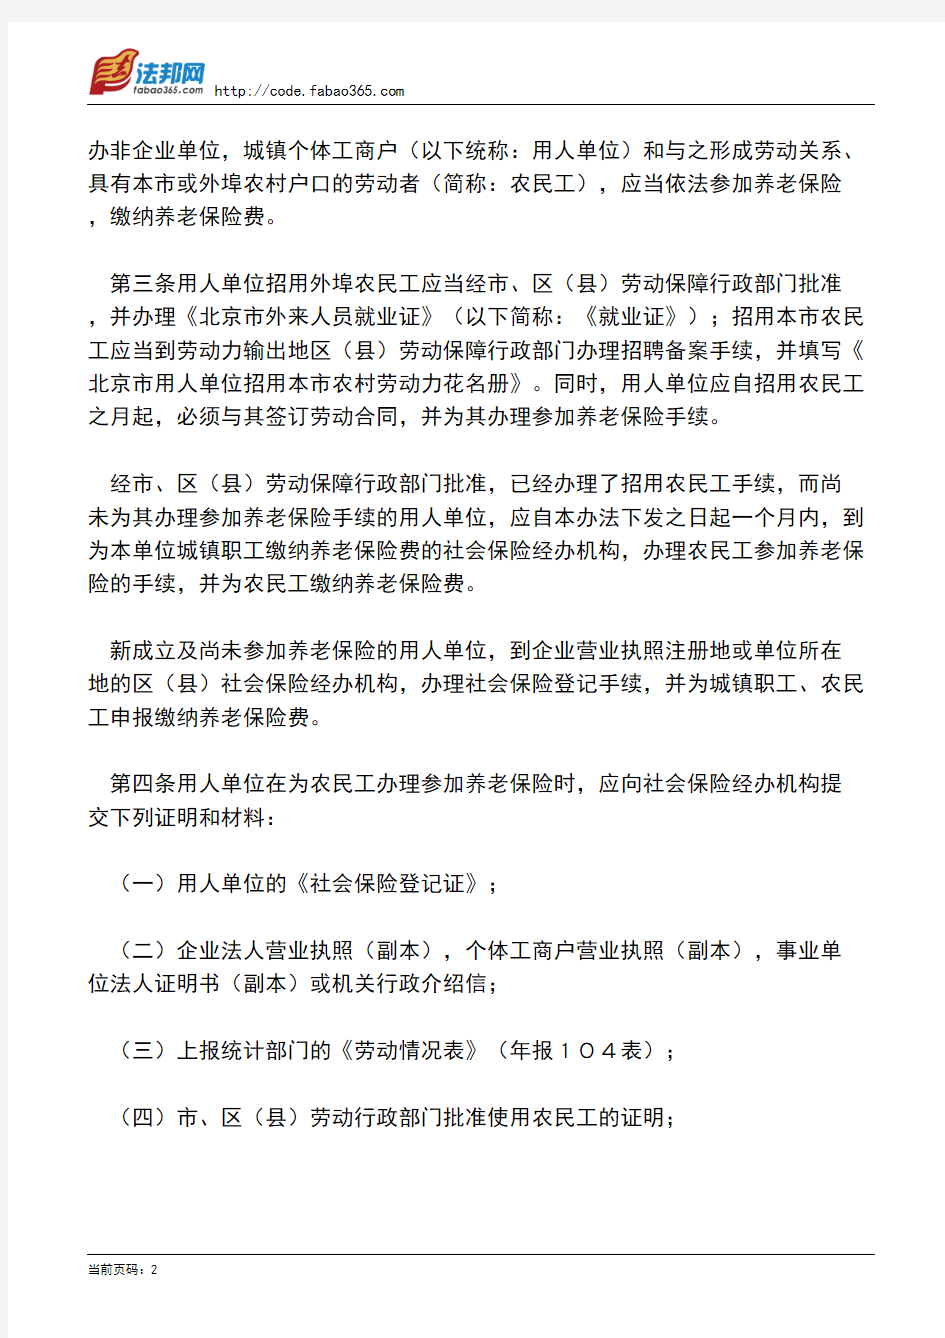 北京市劳动和社会保障局关于印发《北京市农民工养老保险暂行办法》的通知